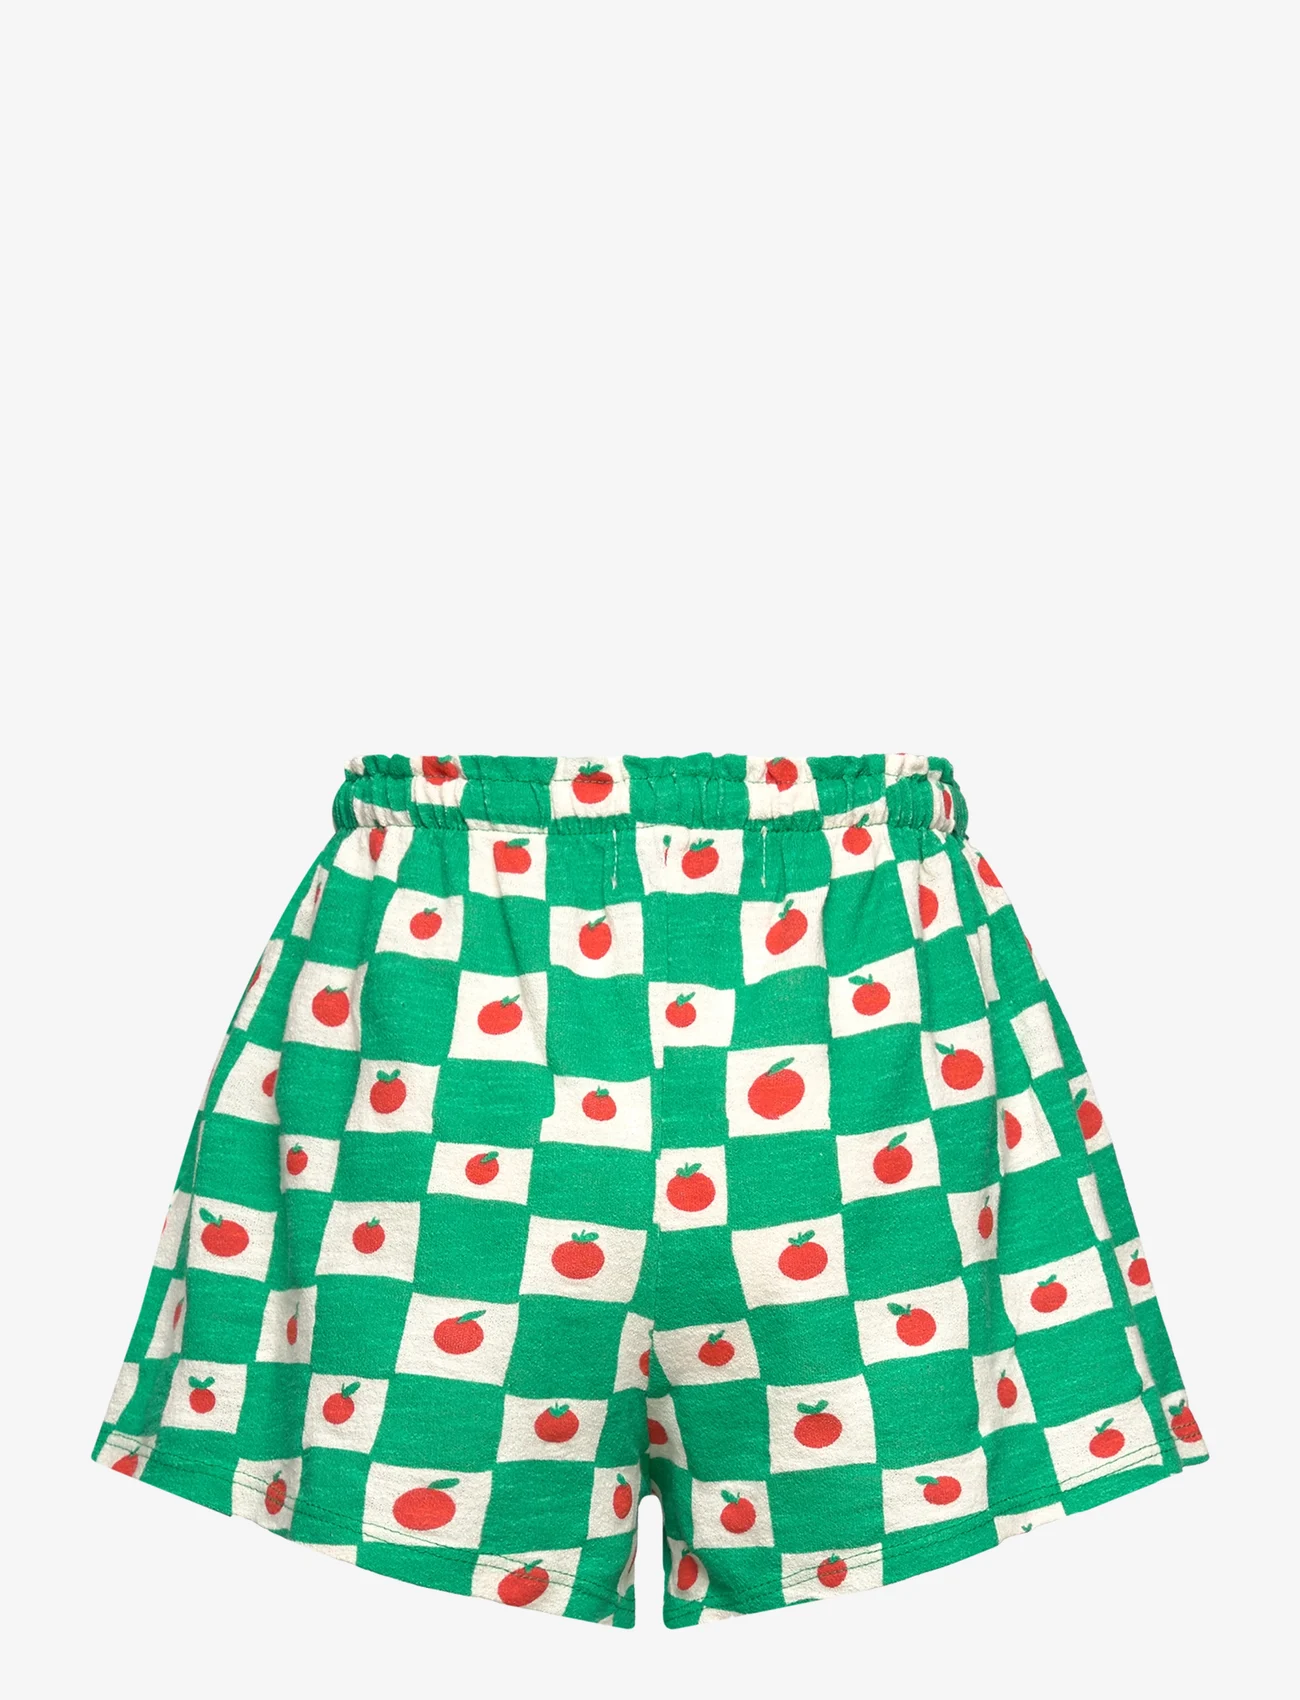 Bobo Choses - Tomato all over ruffle shorts - sporta šorti - white - 1